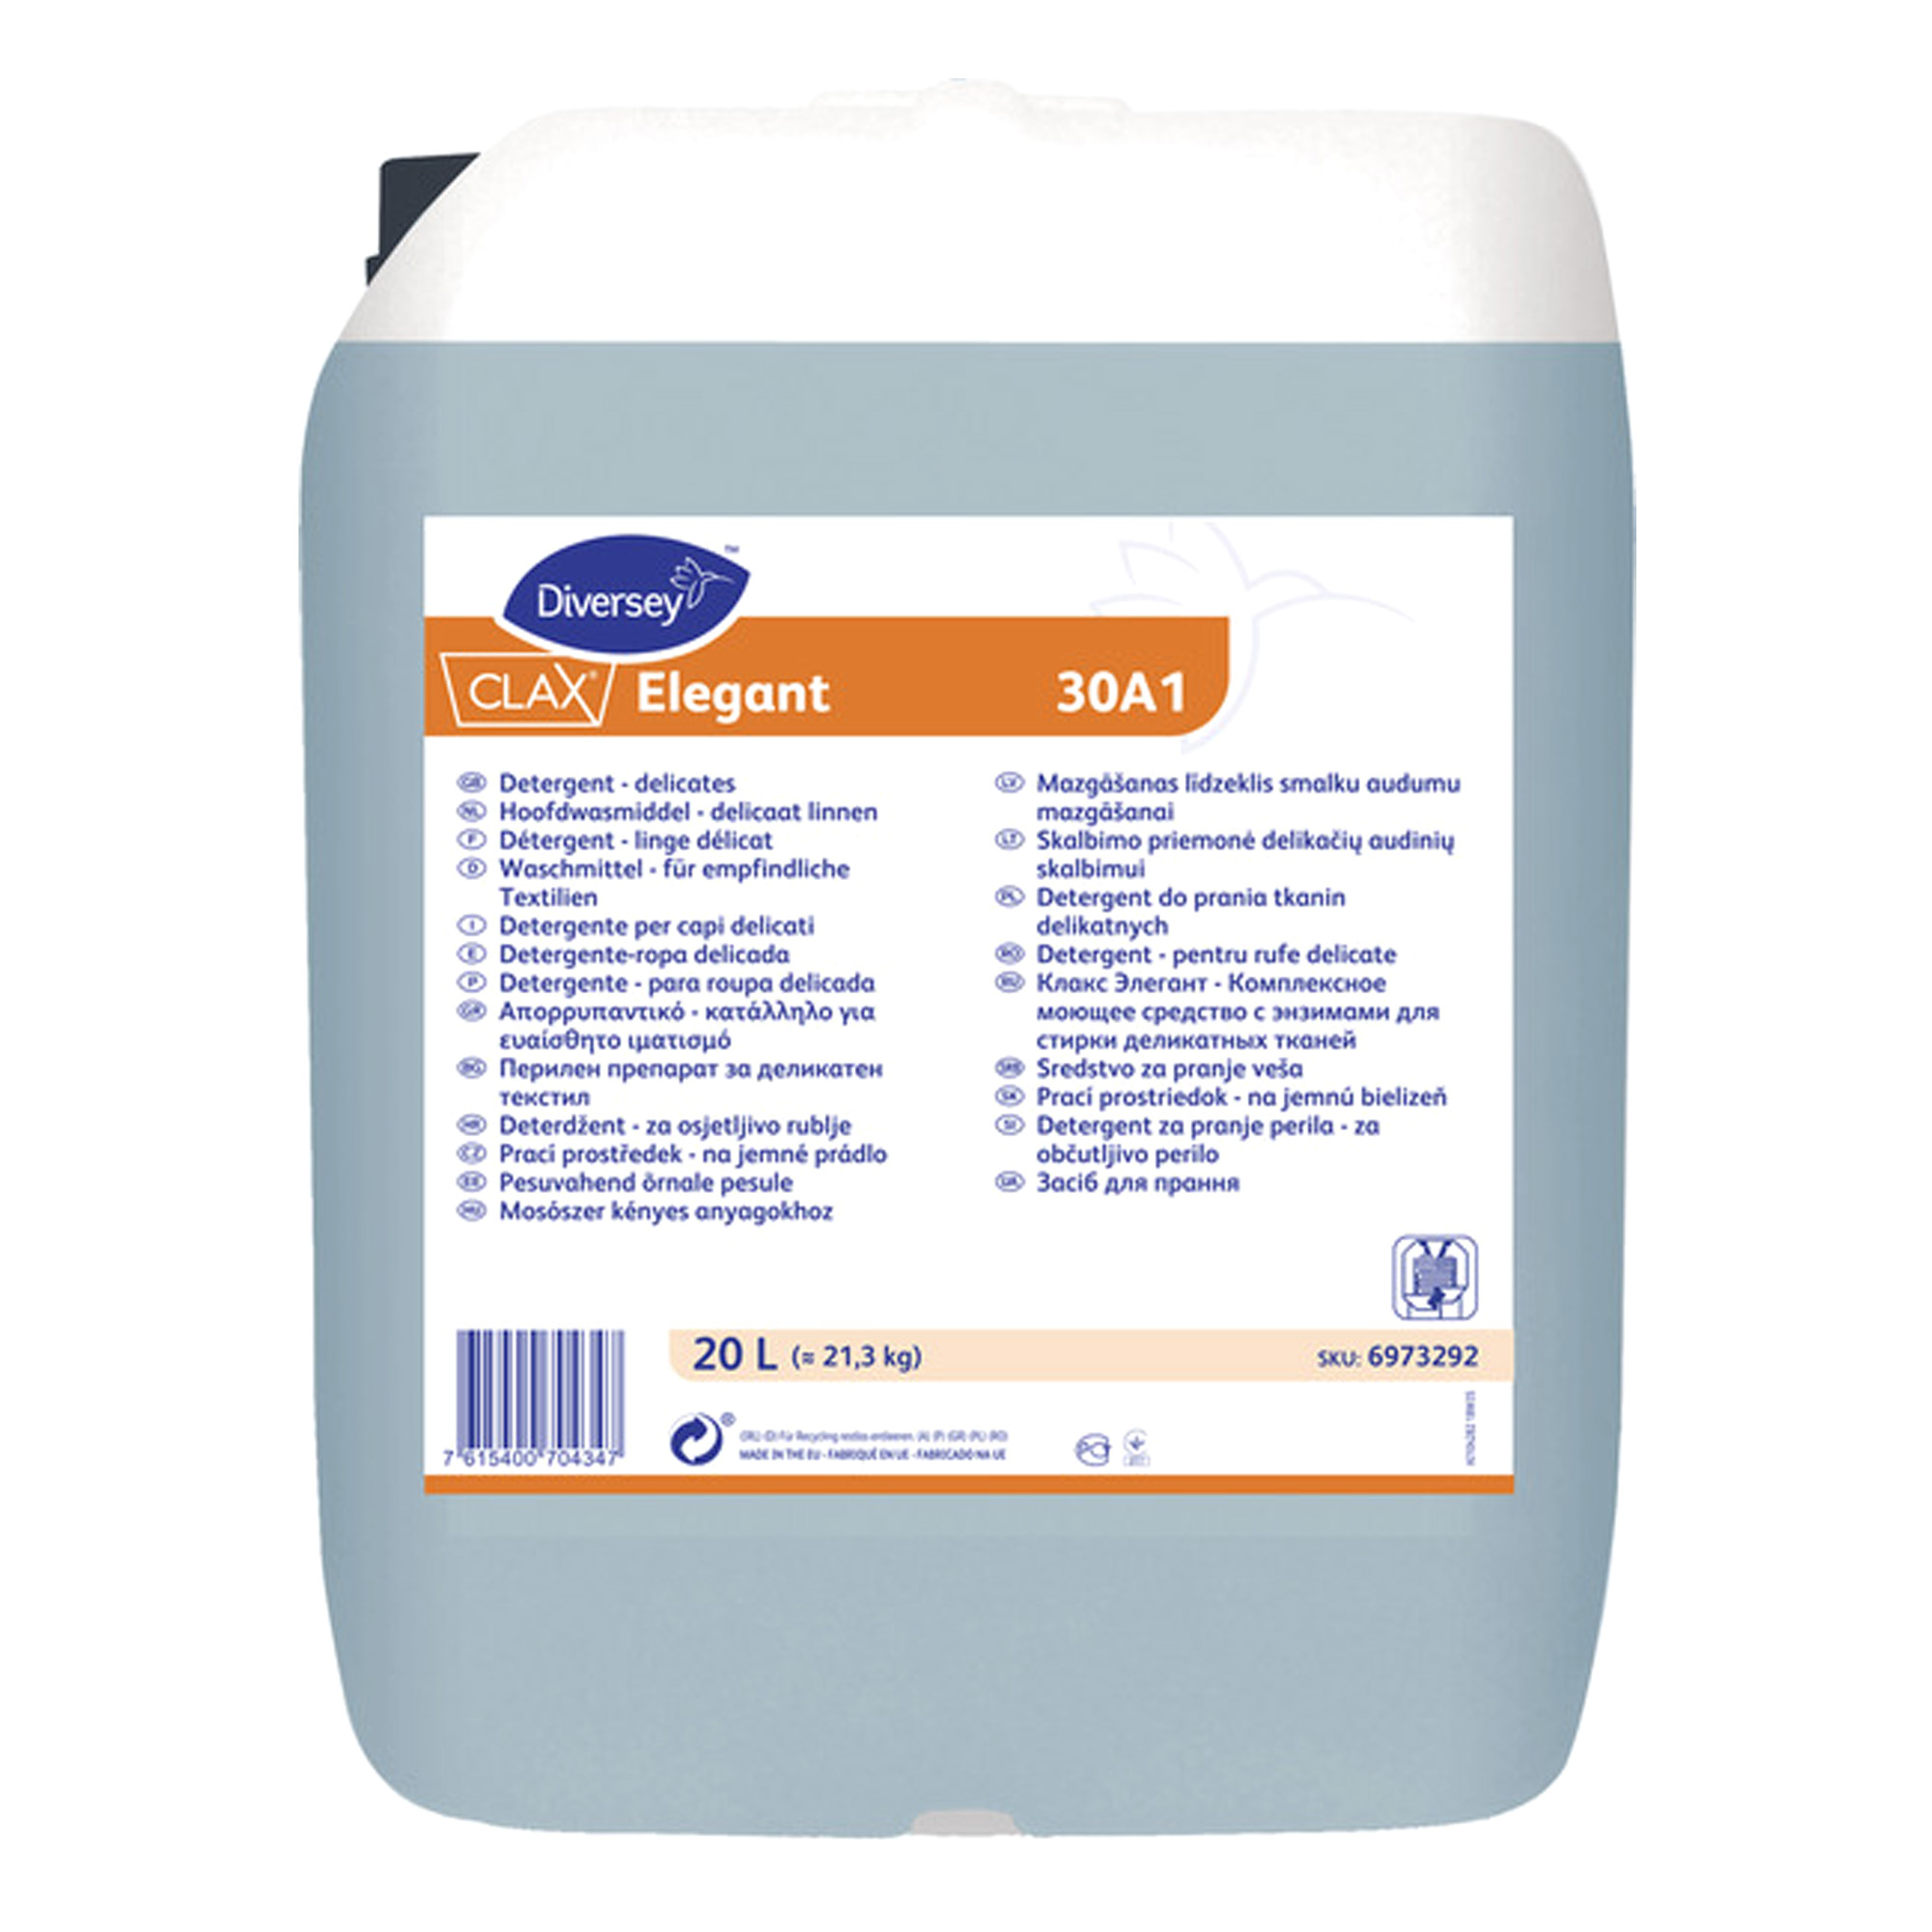 Clax Elegant 30A1 enzymatisches Feinwaschmittel 20 Liter Kanister 6973292_1